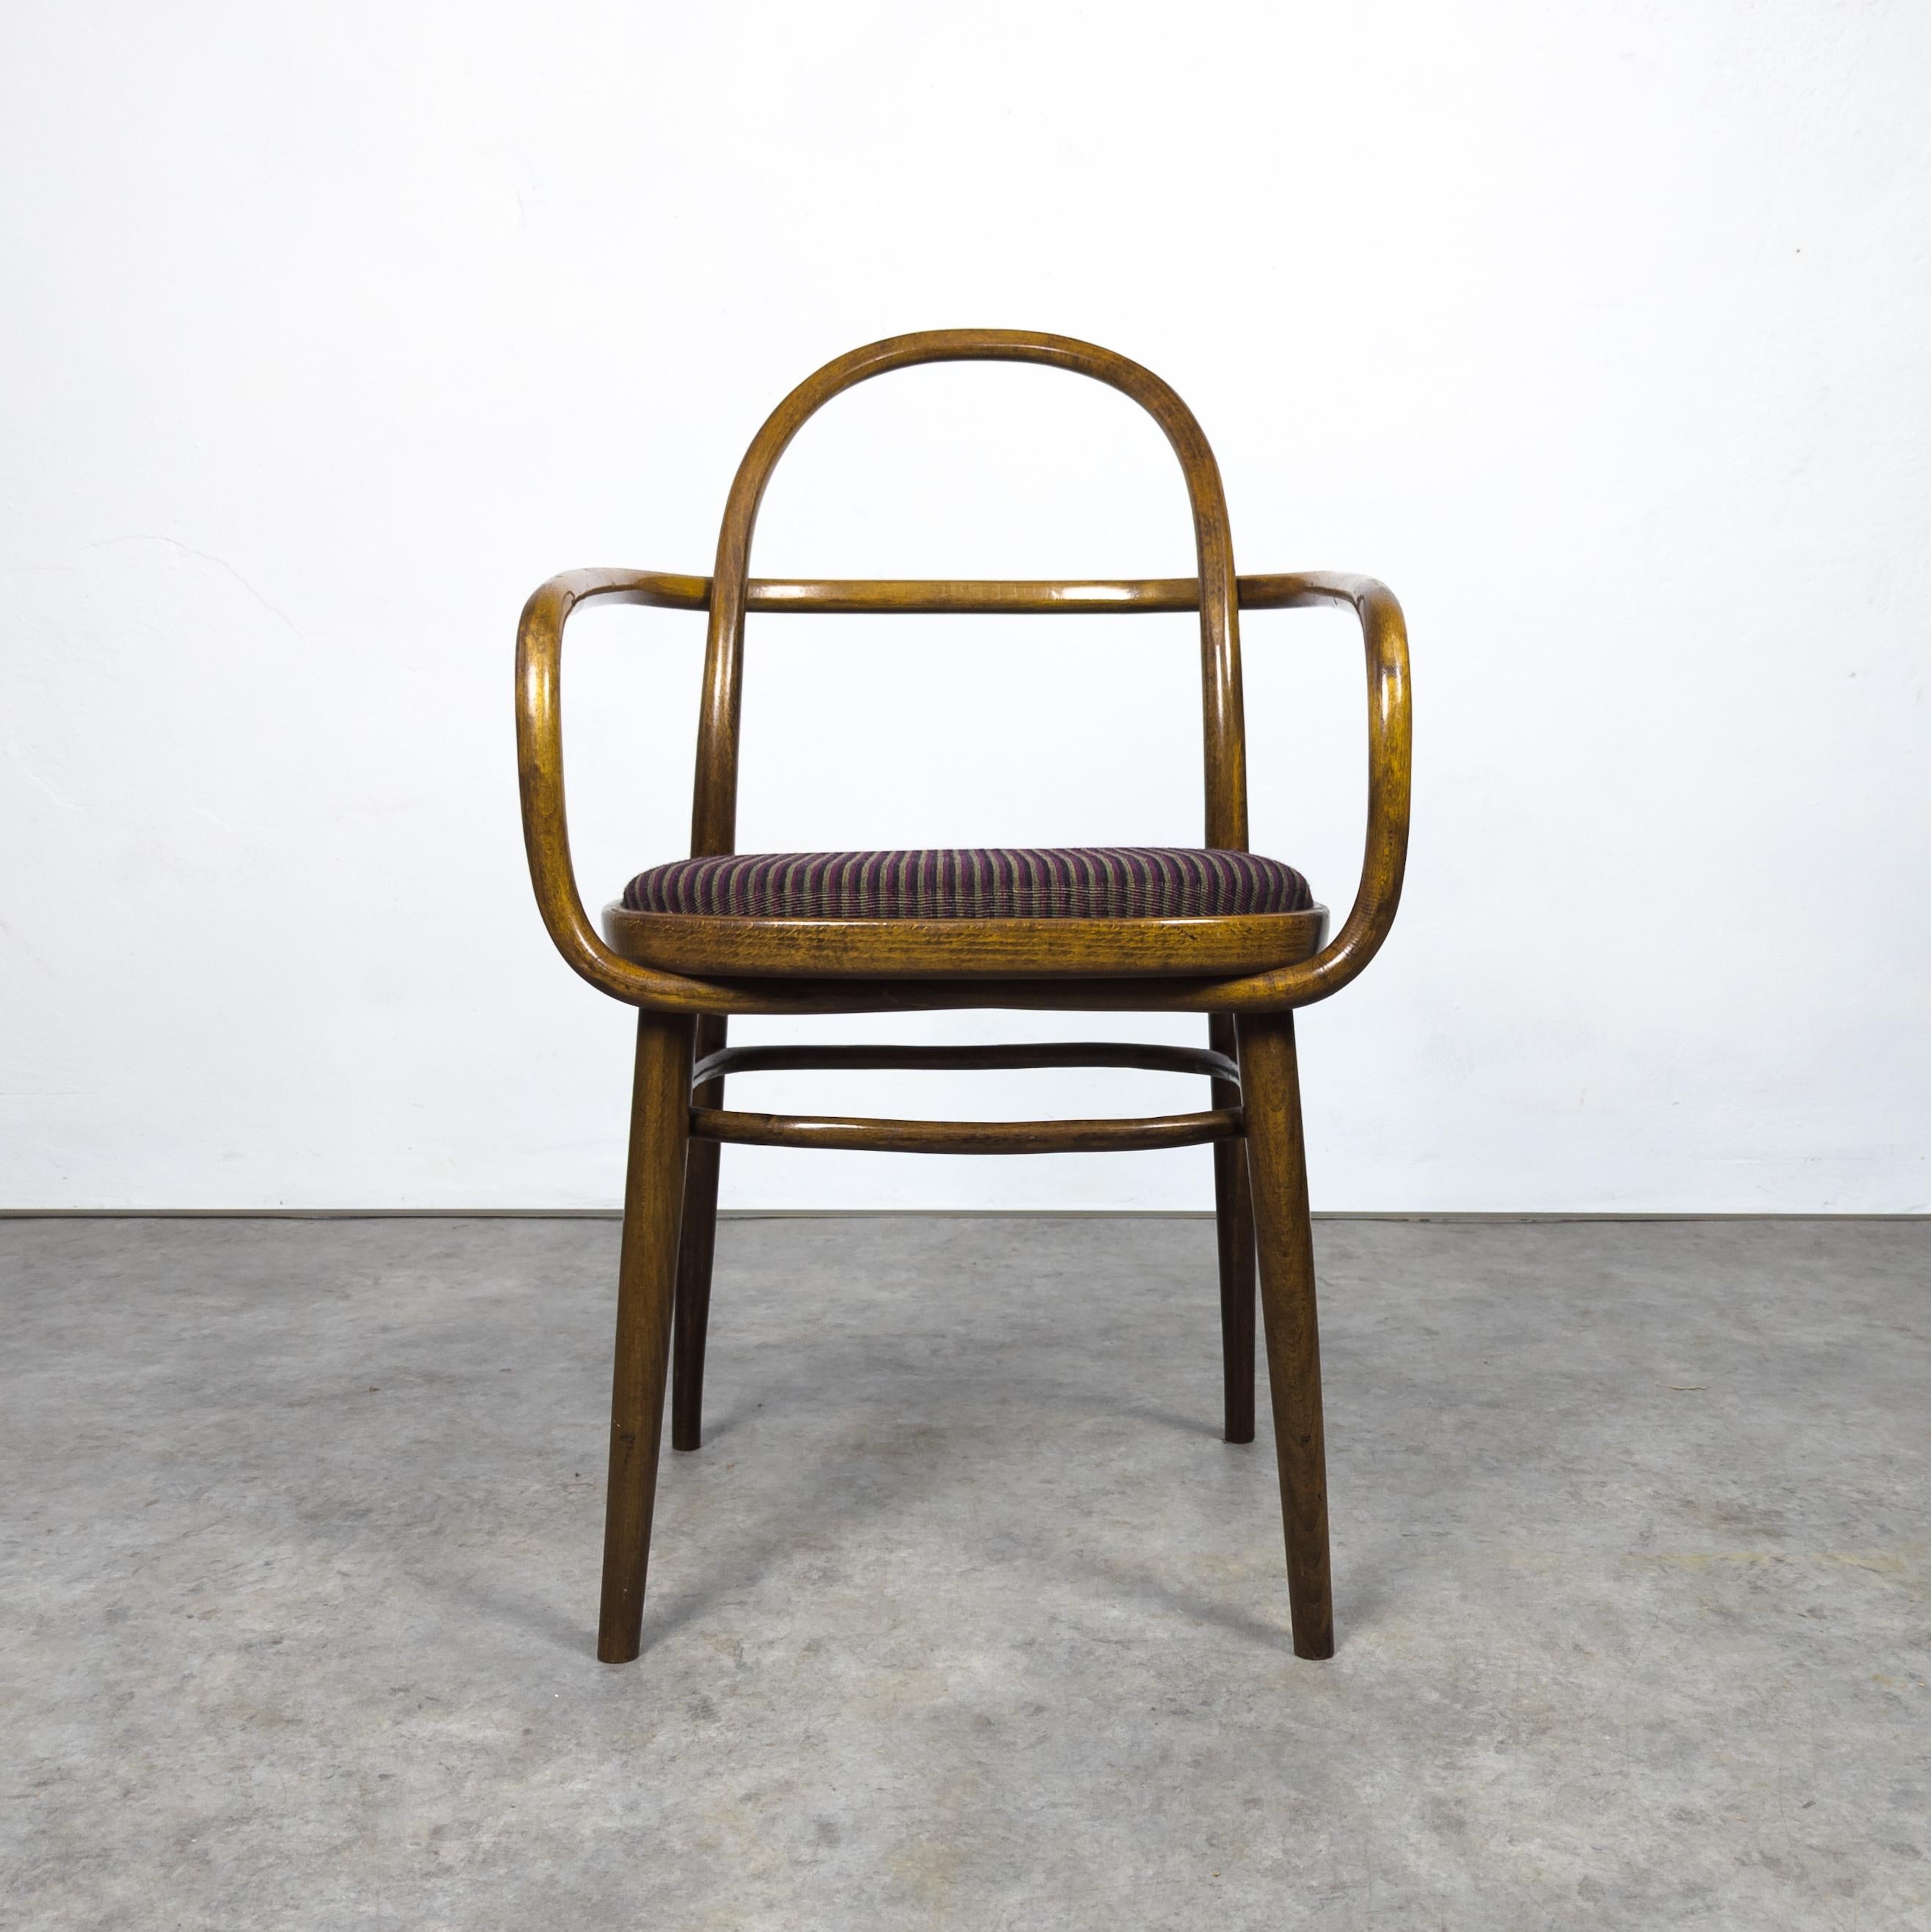 Chaise extrêmement rare conçue par Radomir Hofman pour Ton en 1967 pour l'exposition EXPO à Toronto. Ces chaises ont été conçues pour cet événement spécifique et fabriquées en série limitée sous le numéro de catalogue 615 par la société TON,